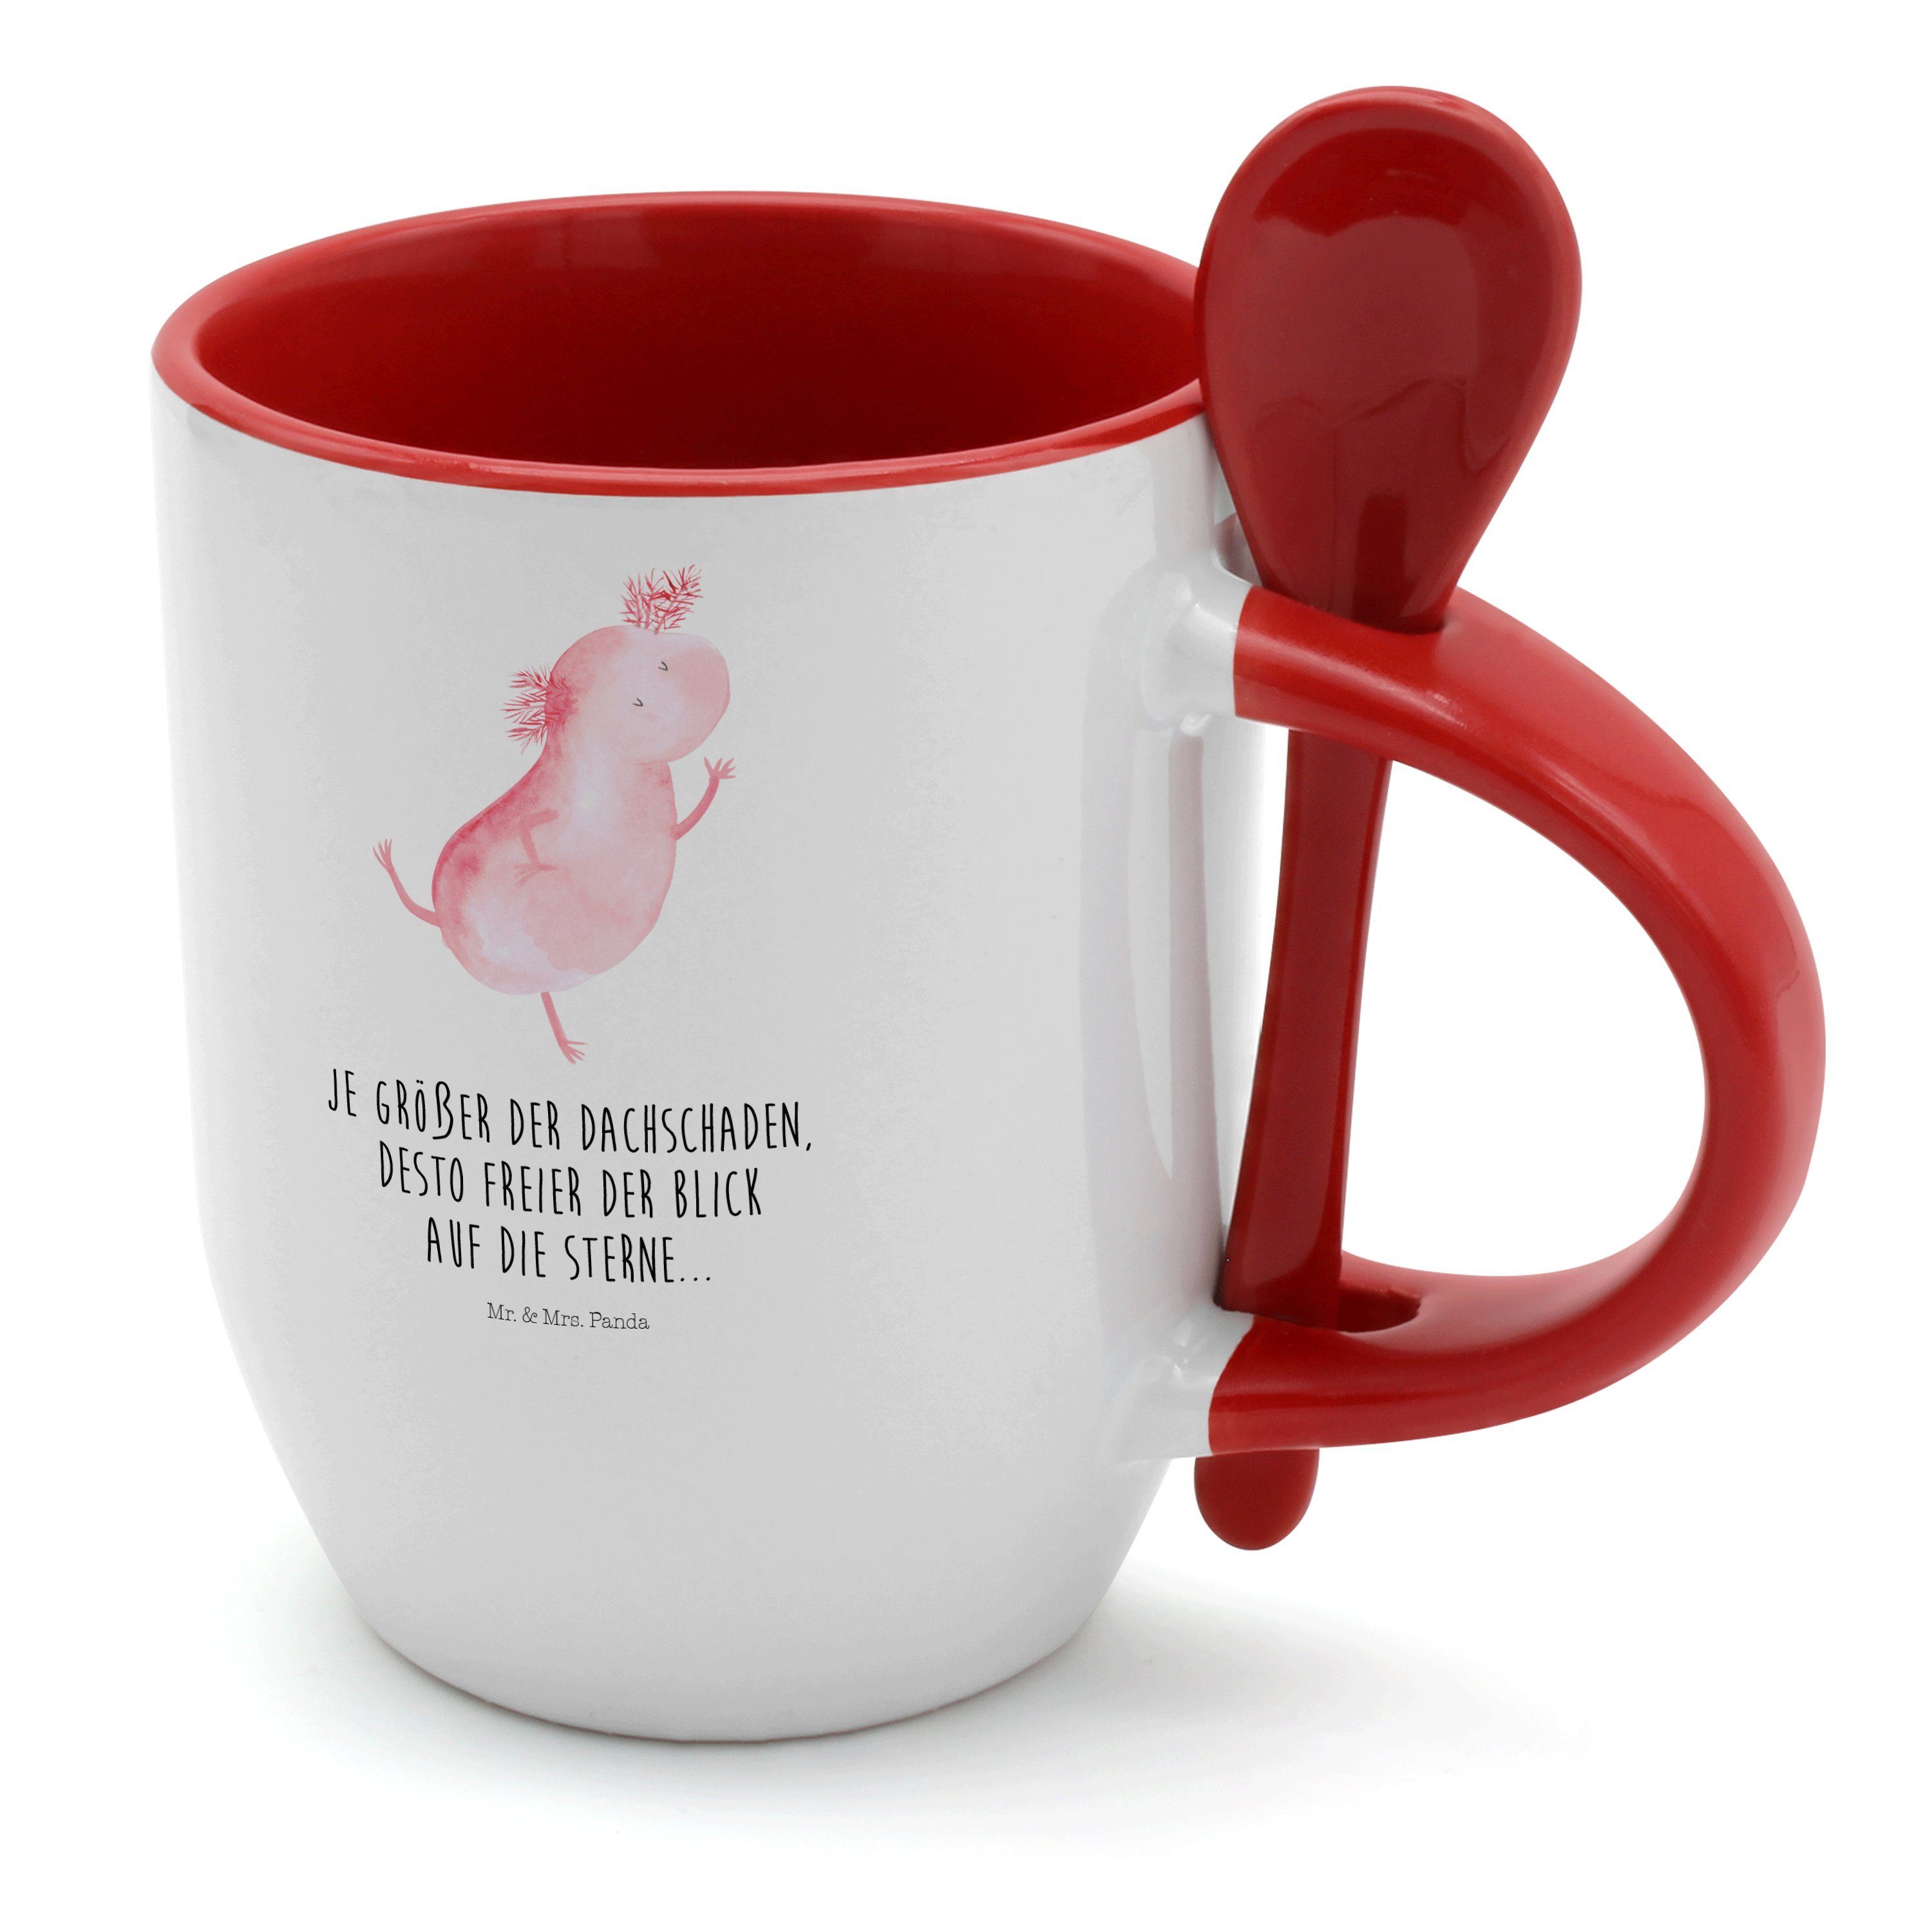 Mr. & Mrs. Panda Tasse Axolotl tanzt - Weiß - Geschenk, Tassen, Kaffeebecher, Sterne, Kaffee, Keramik